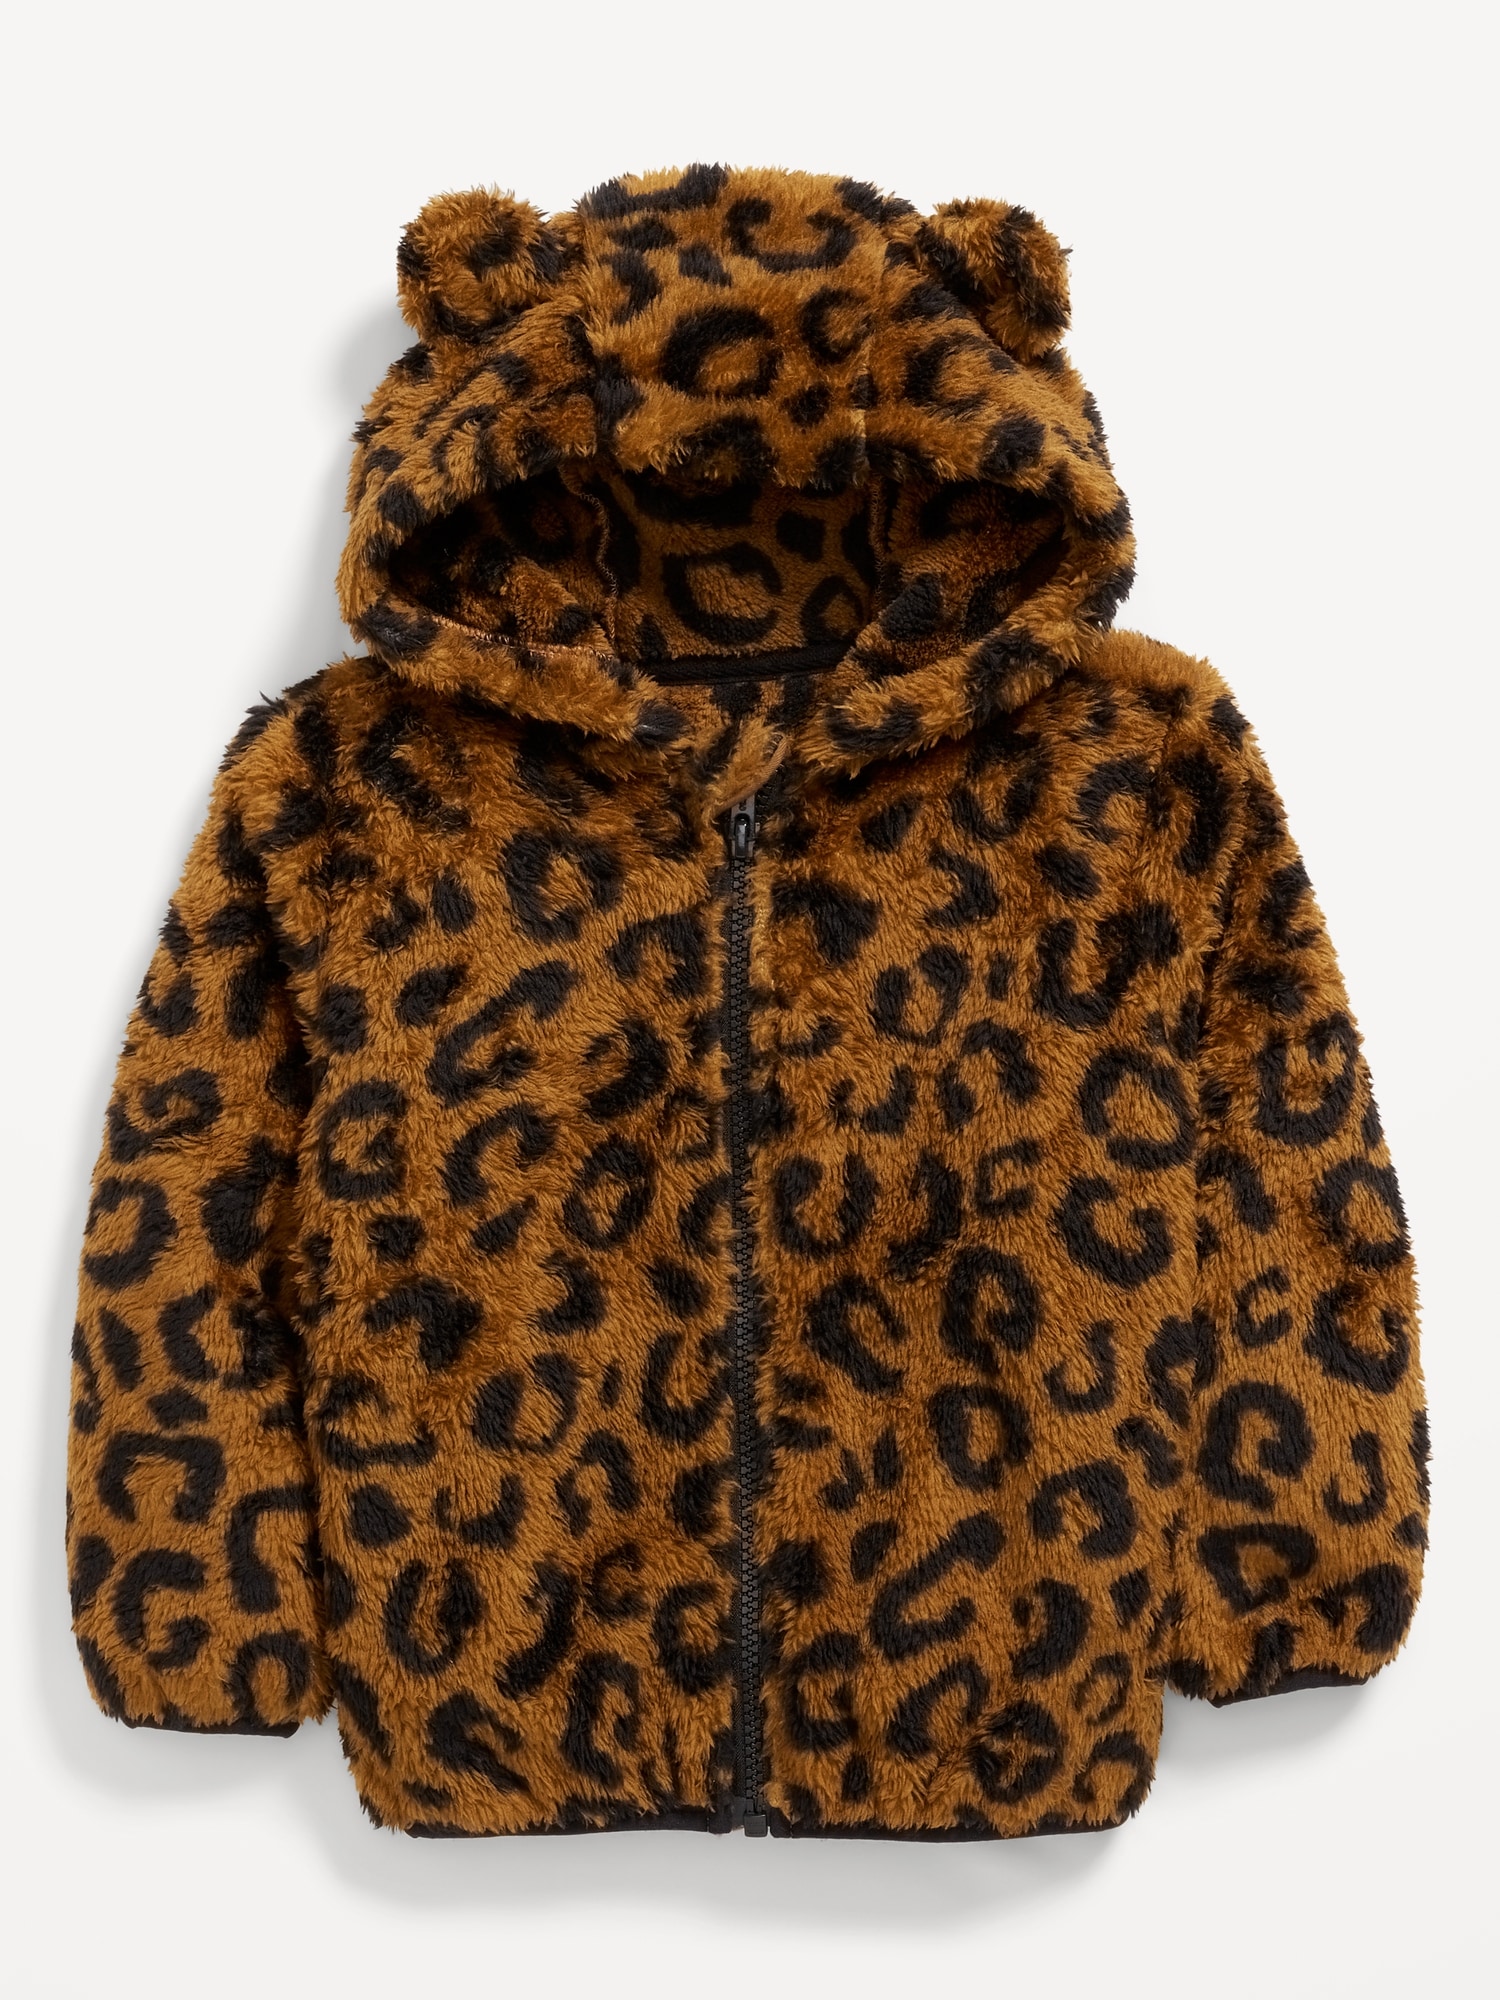 Critter Hooded Jacket for Toddler Girls